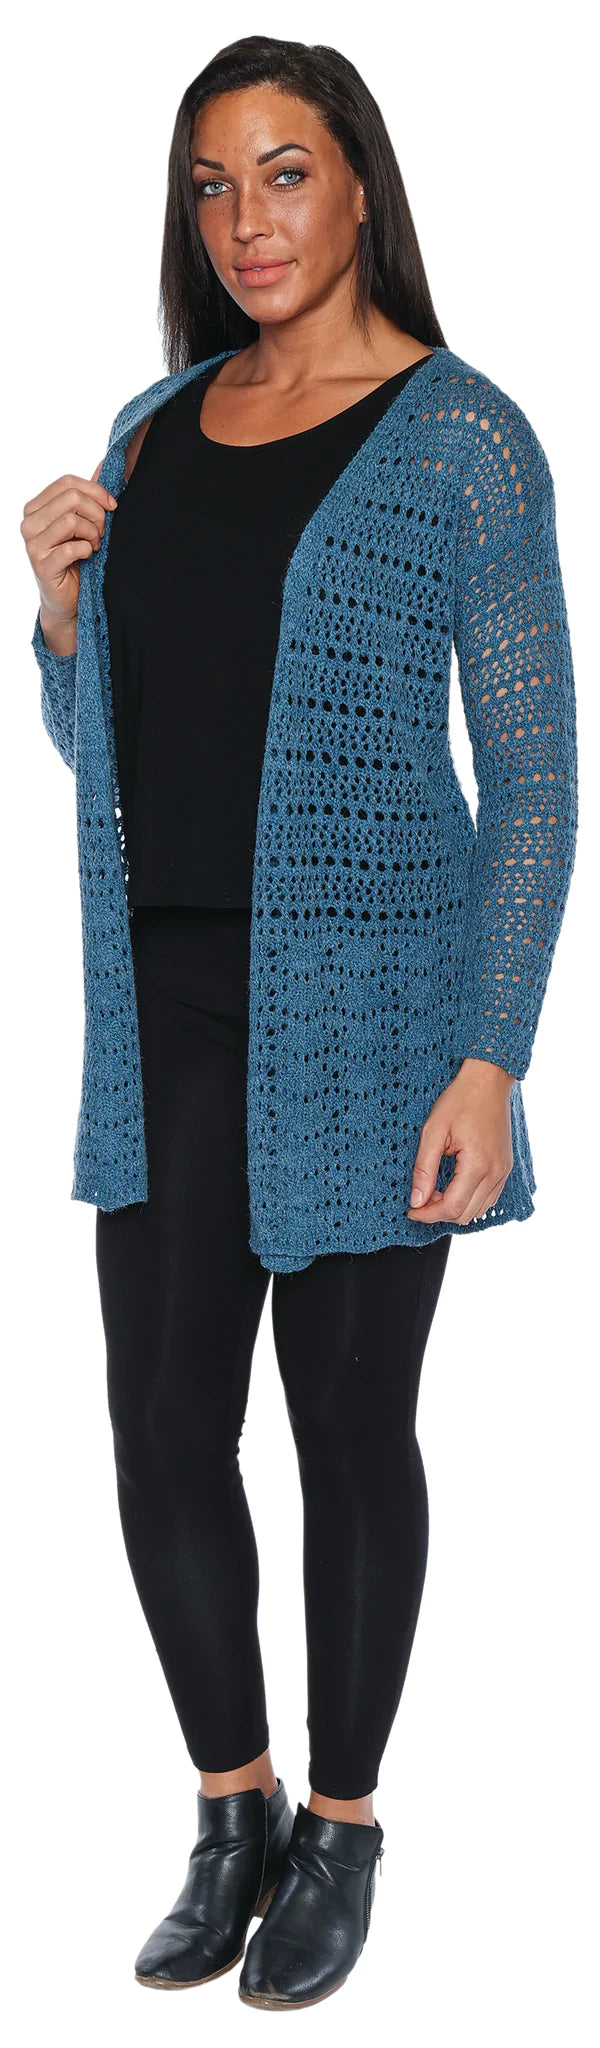 Blake Crochet Cardigan - Size Medium